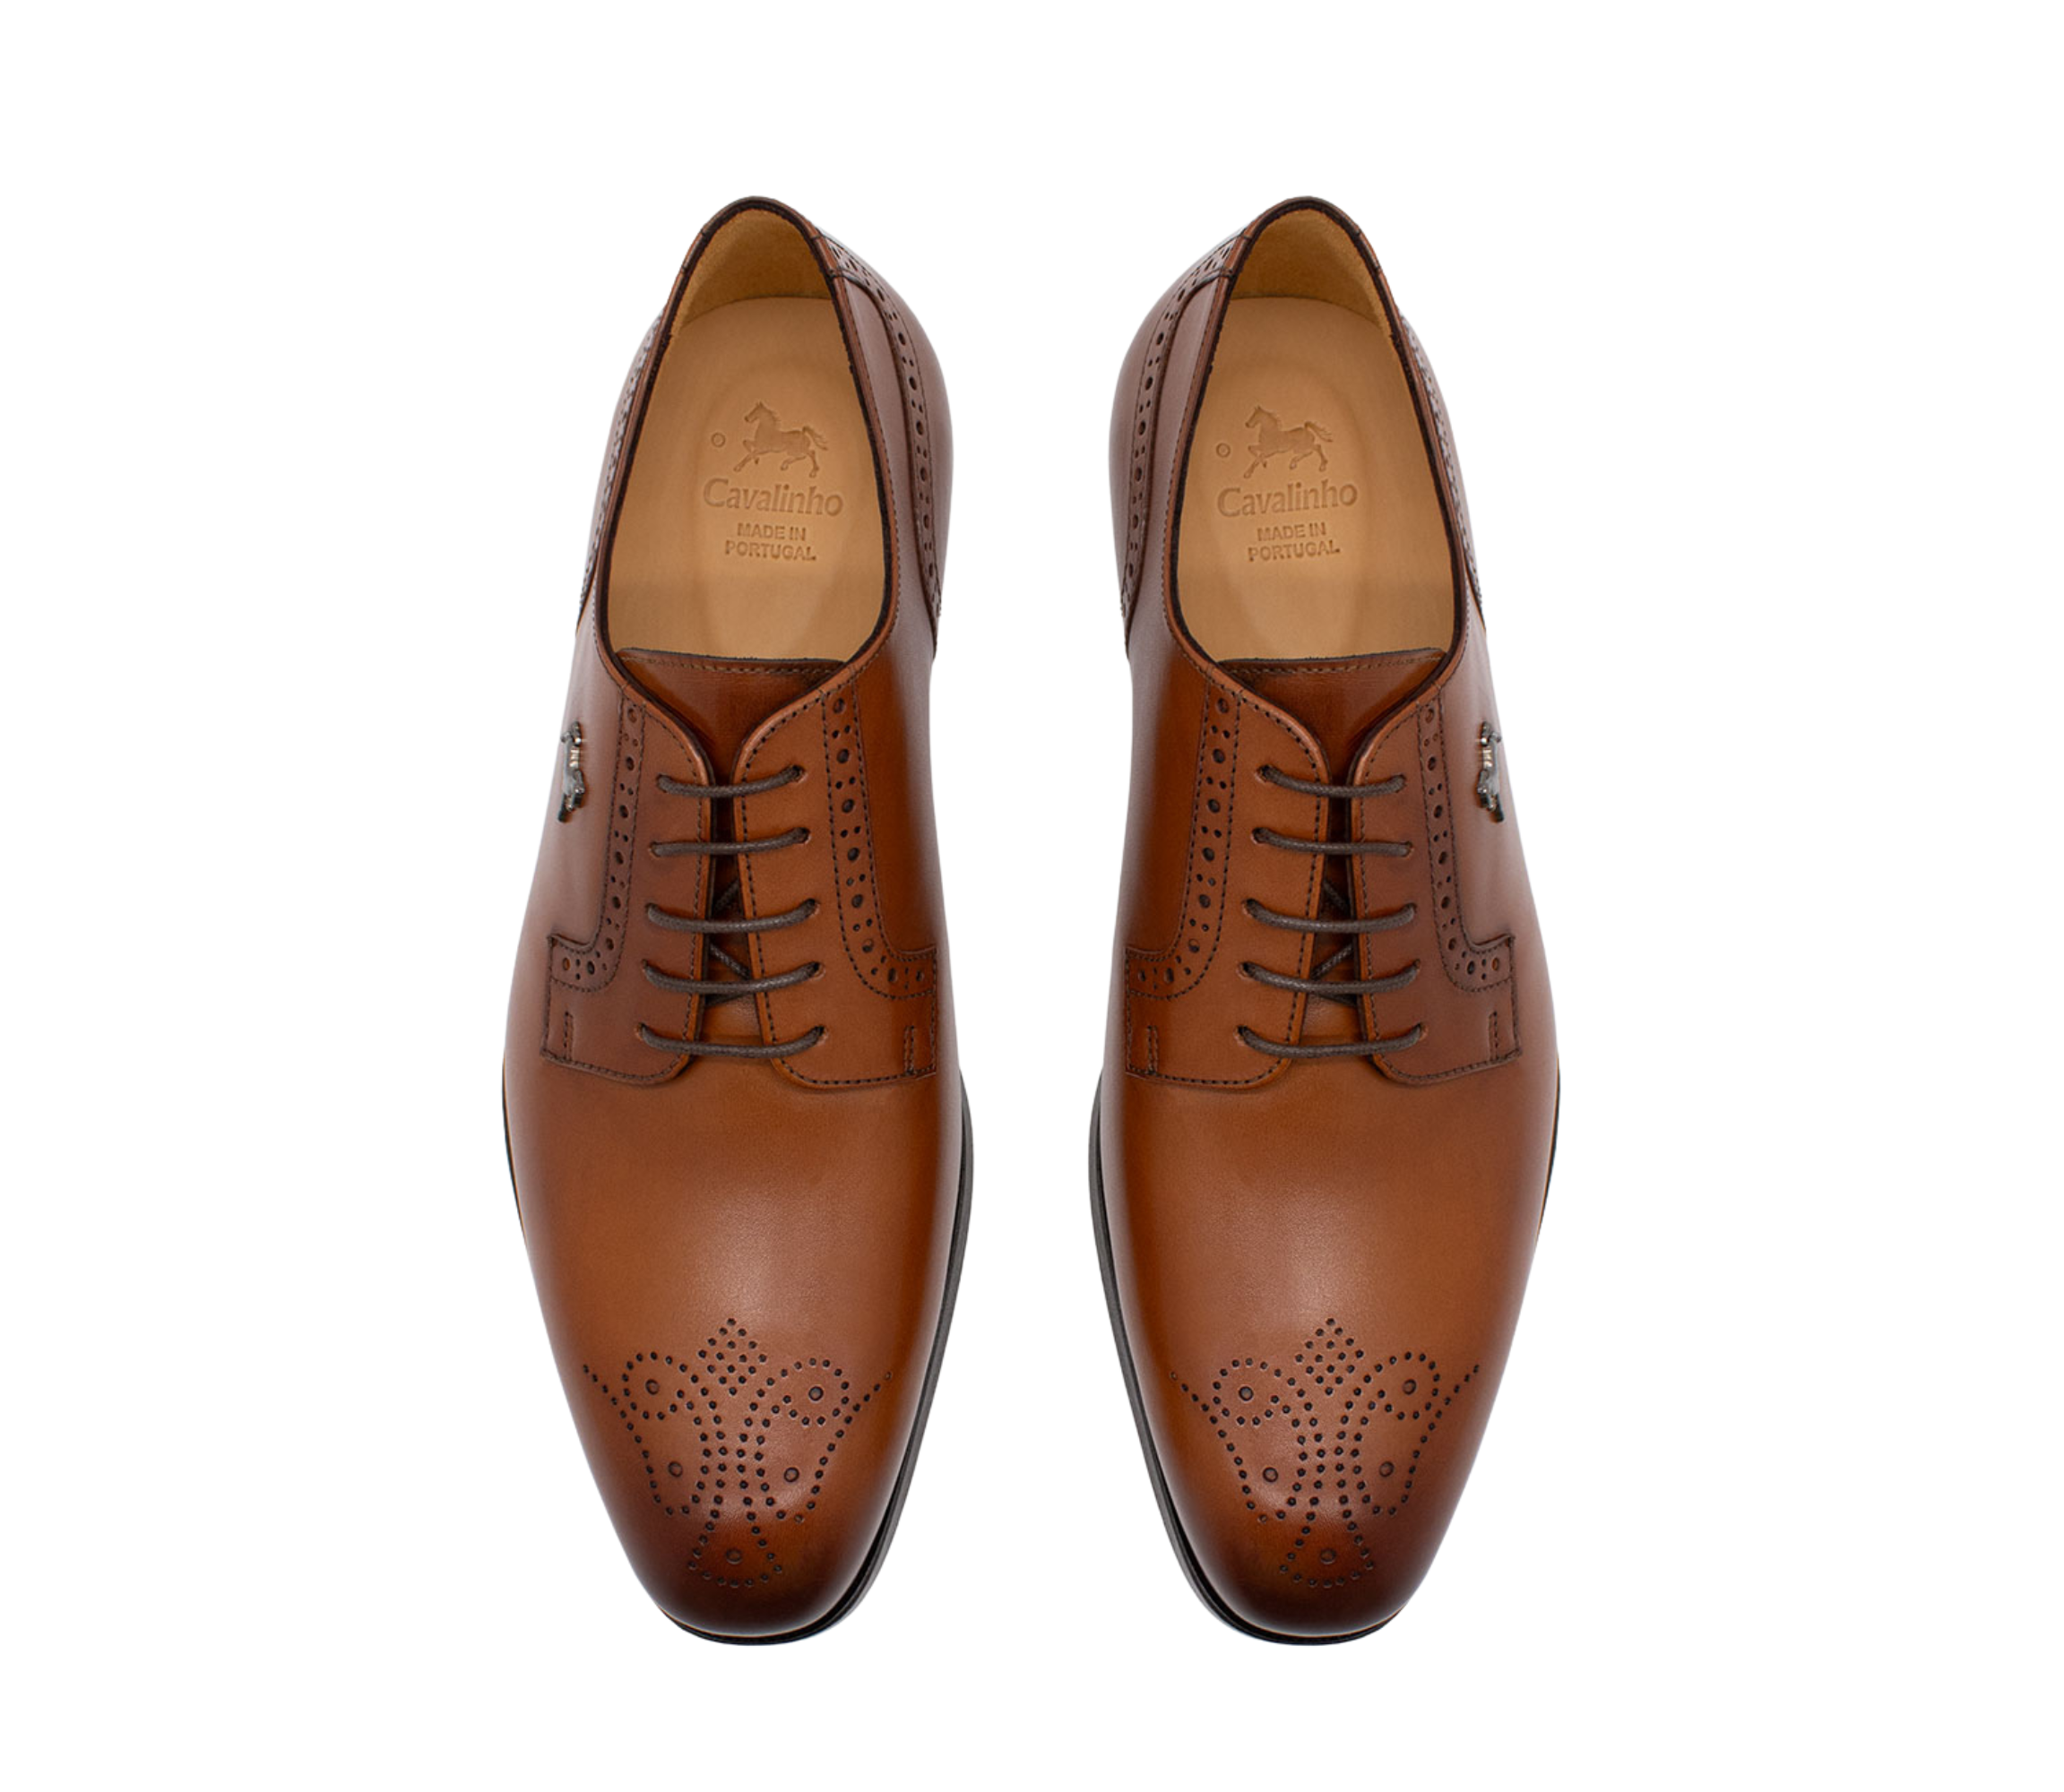 Cavalinho Cavalo Lusitano Leather Derby Brogue Shoes SKU 48060202.14 #color_Brown